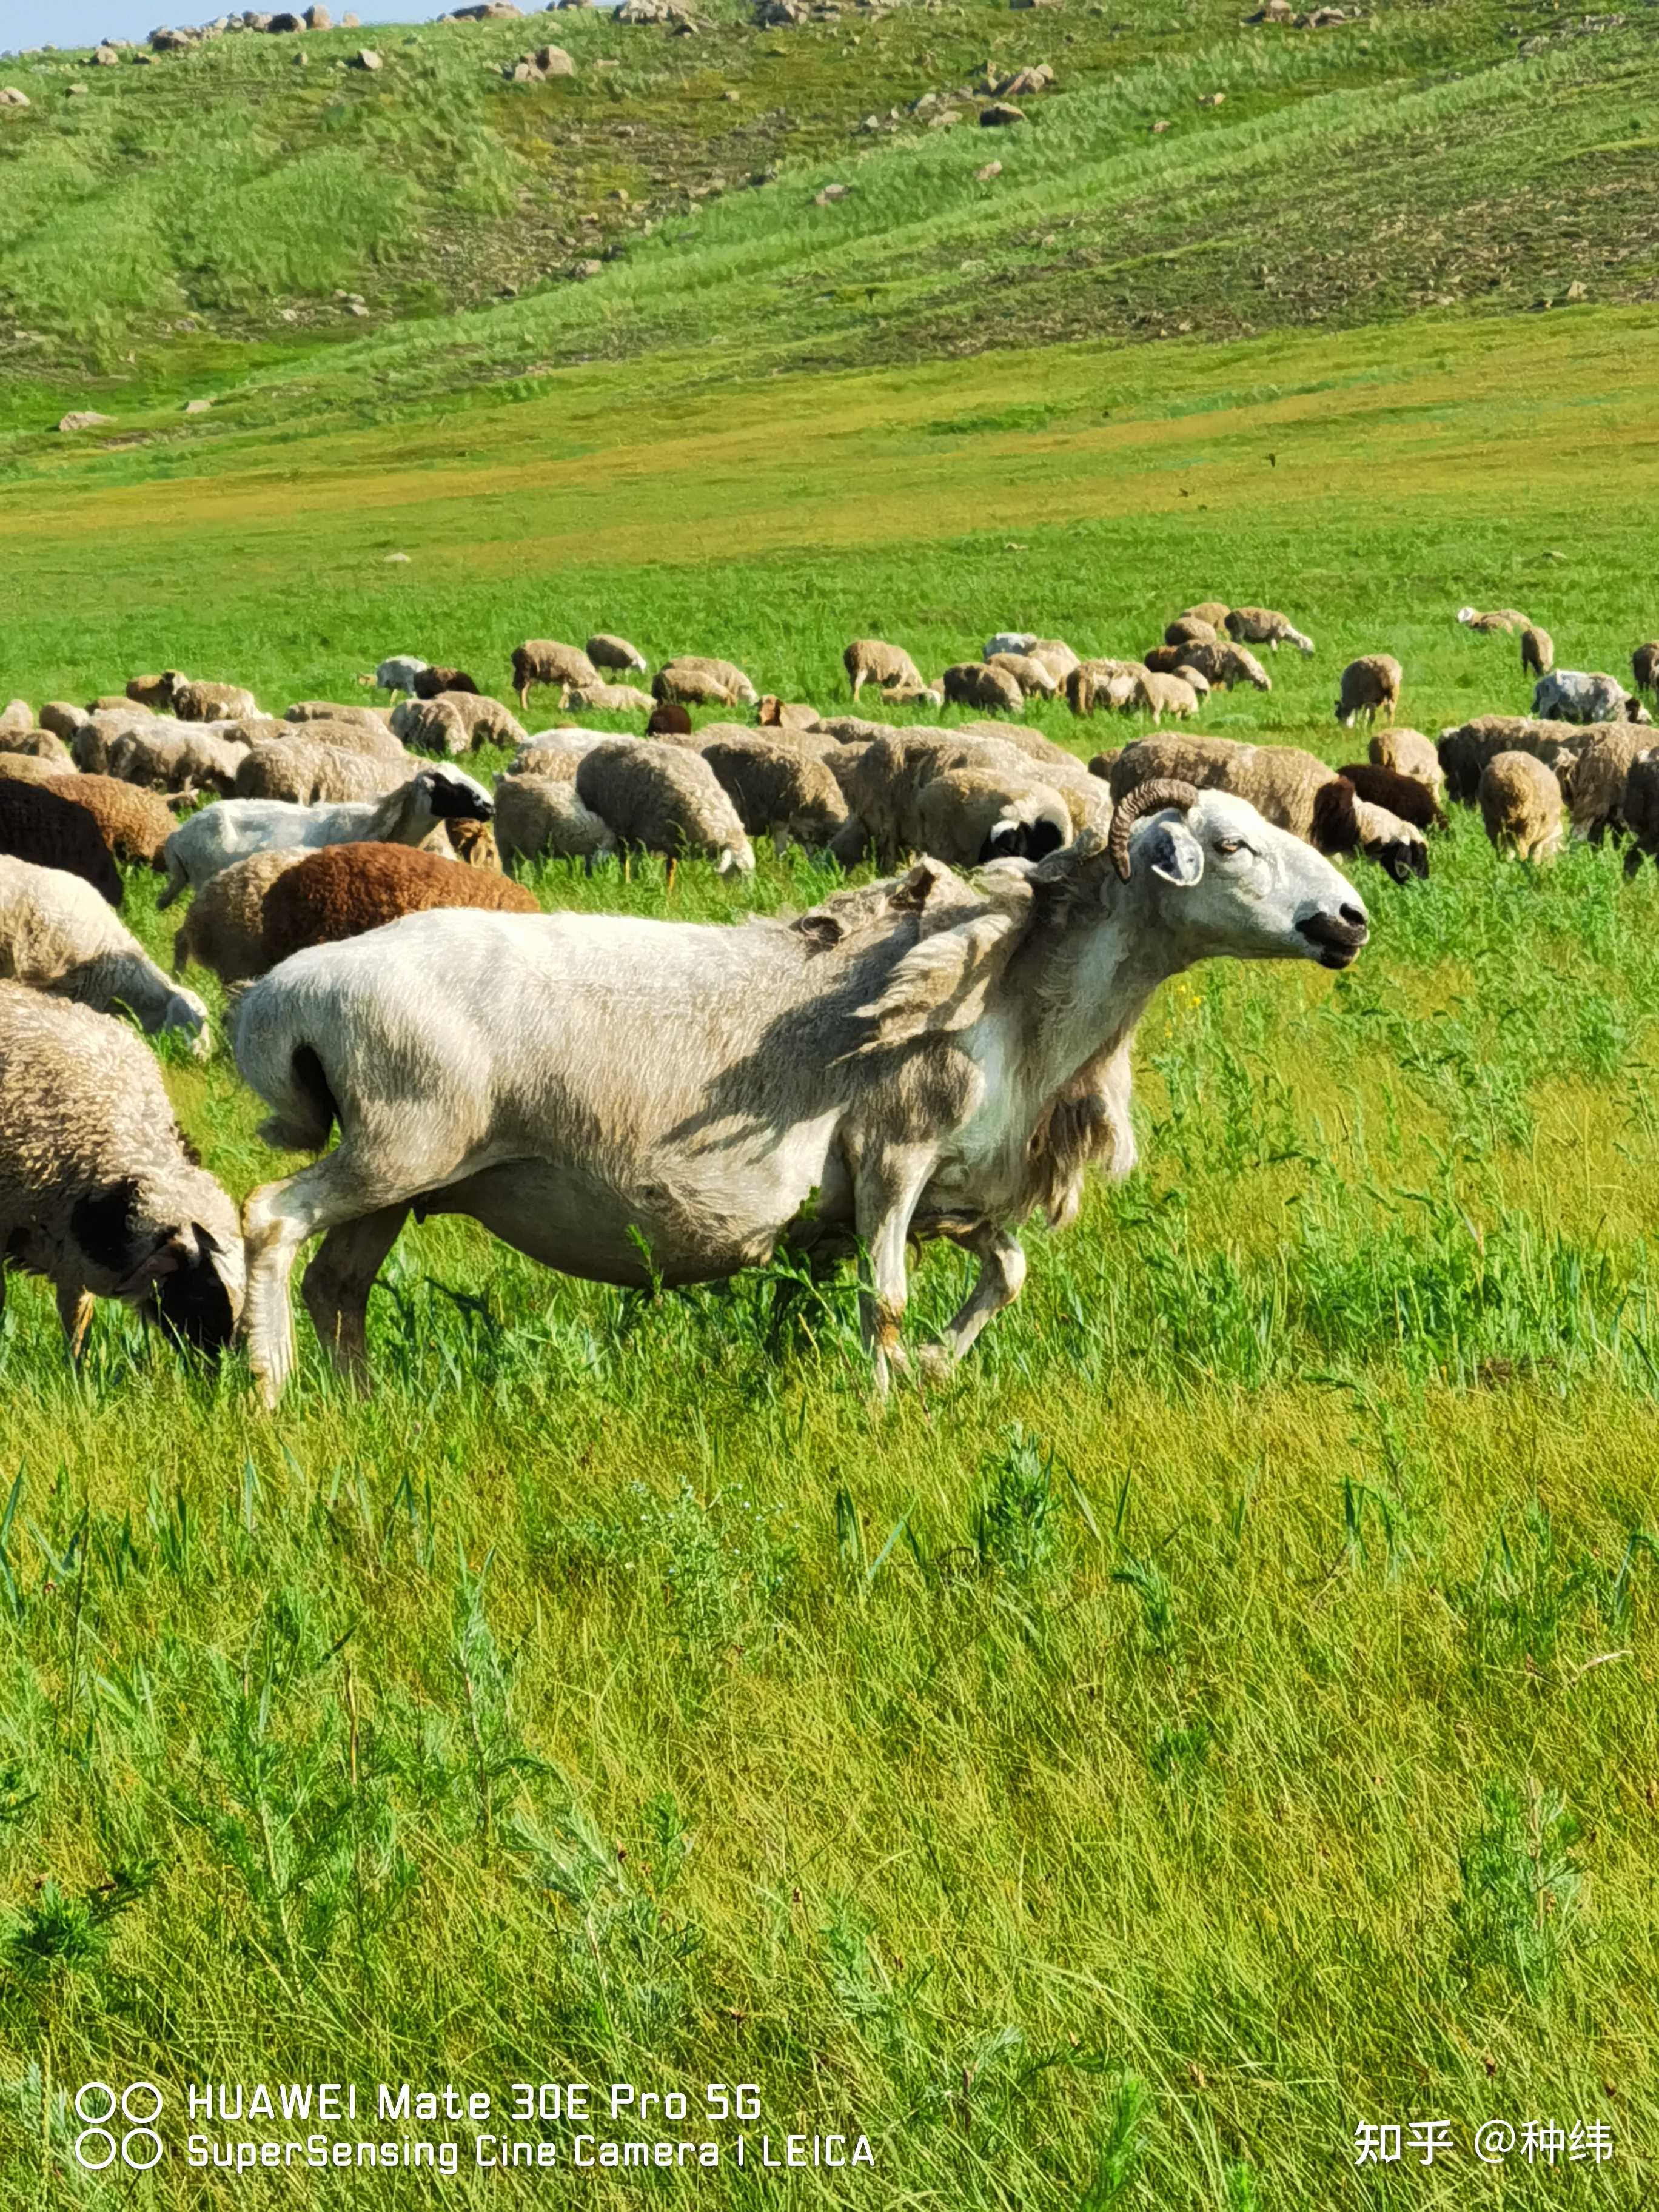 种纬 的想法: 呼伦贝尔大草原的山羊,还带着绒绒的